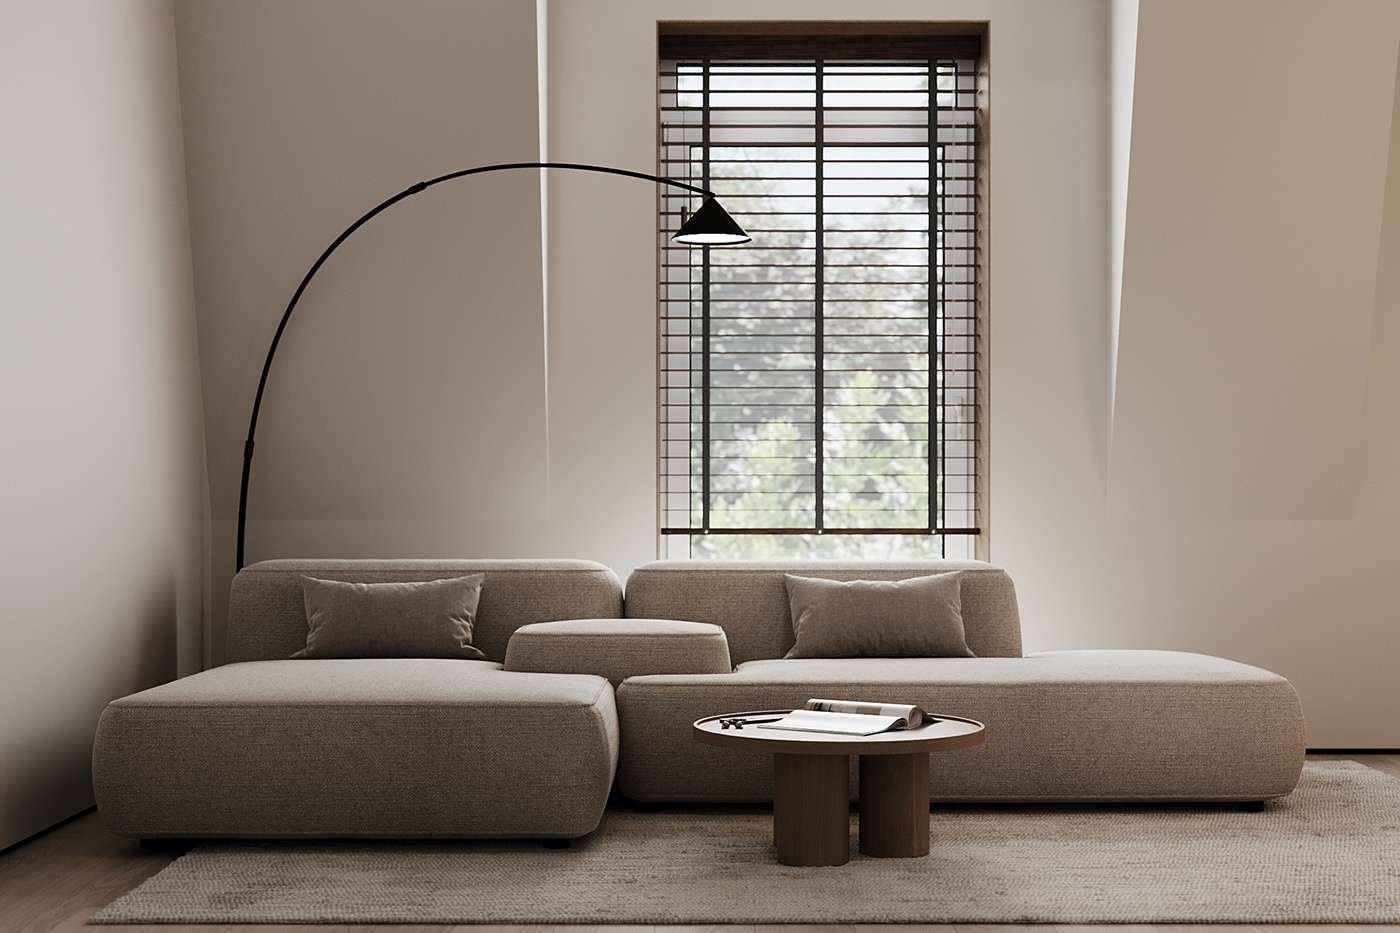 Tổng thể không gian được tiết chế số lượng nội thất đúng với tinh thần minimalism